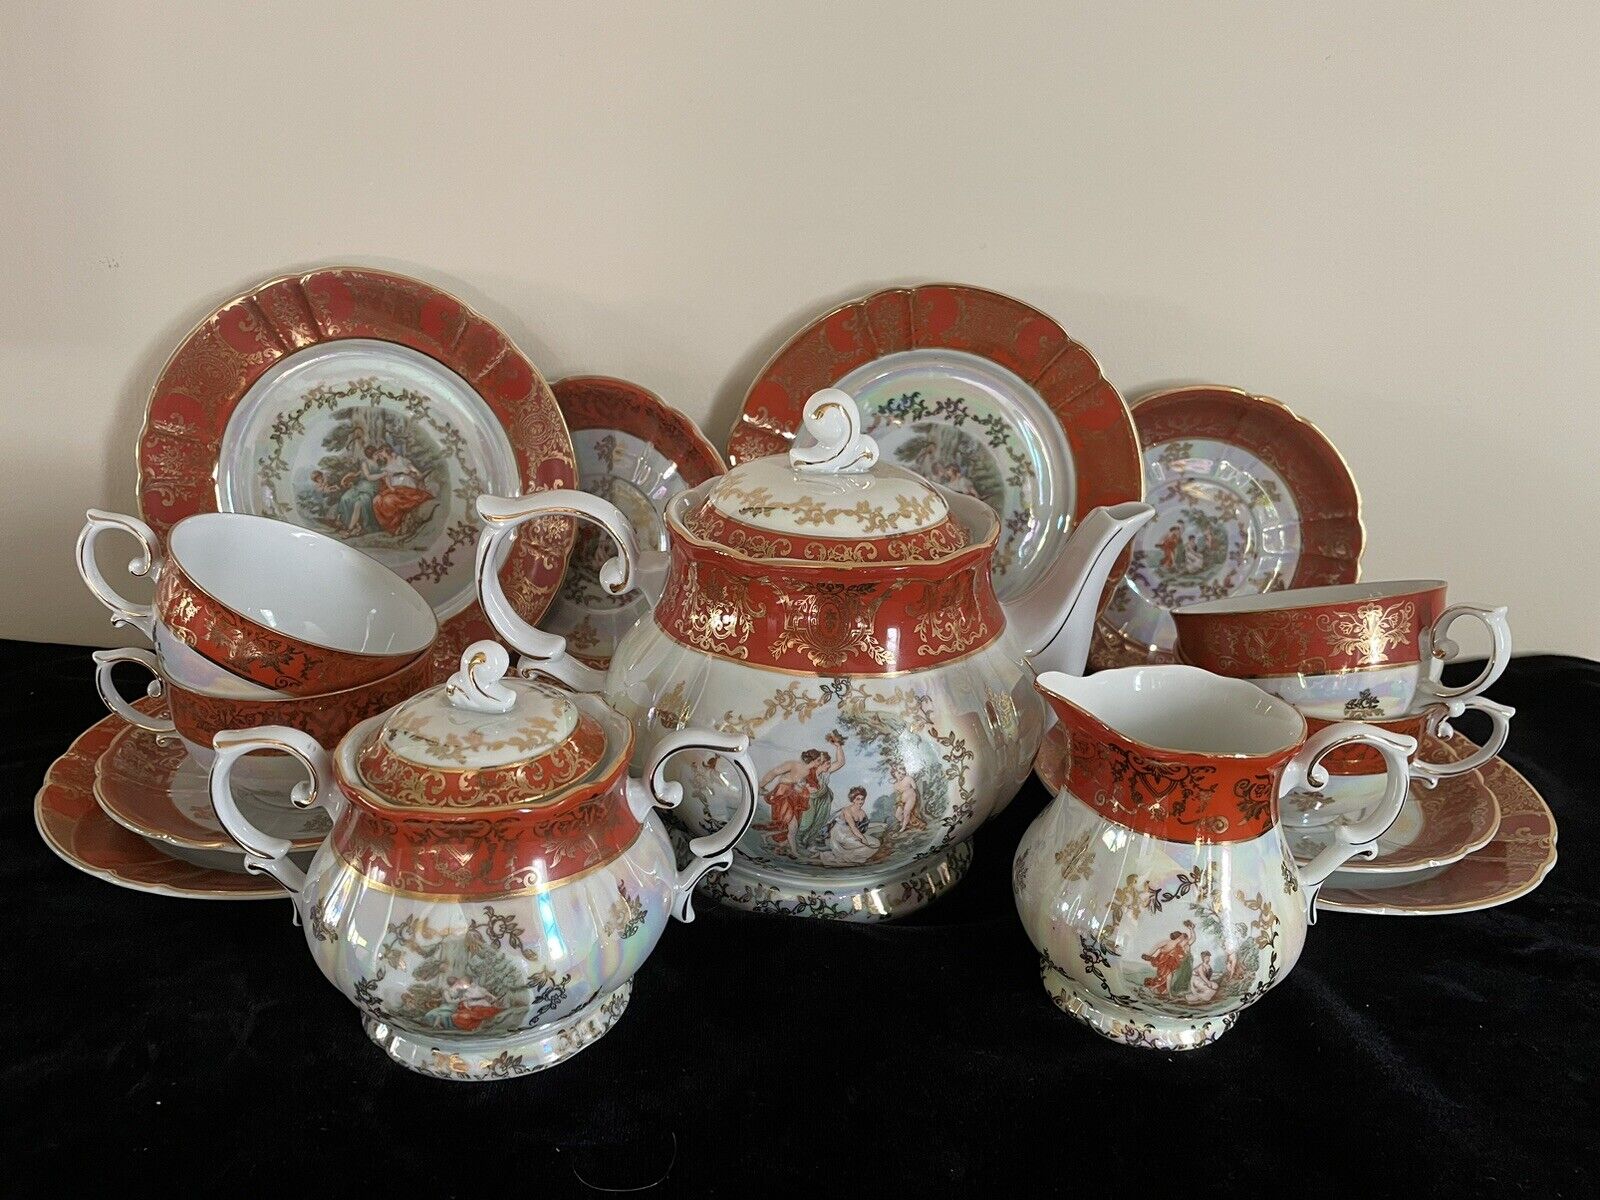 15 Pcs Oscar Schlegelmilch Lusterware Tea Pot Tea Set for 4 Serving Excellent